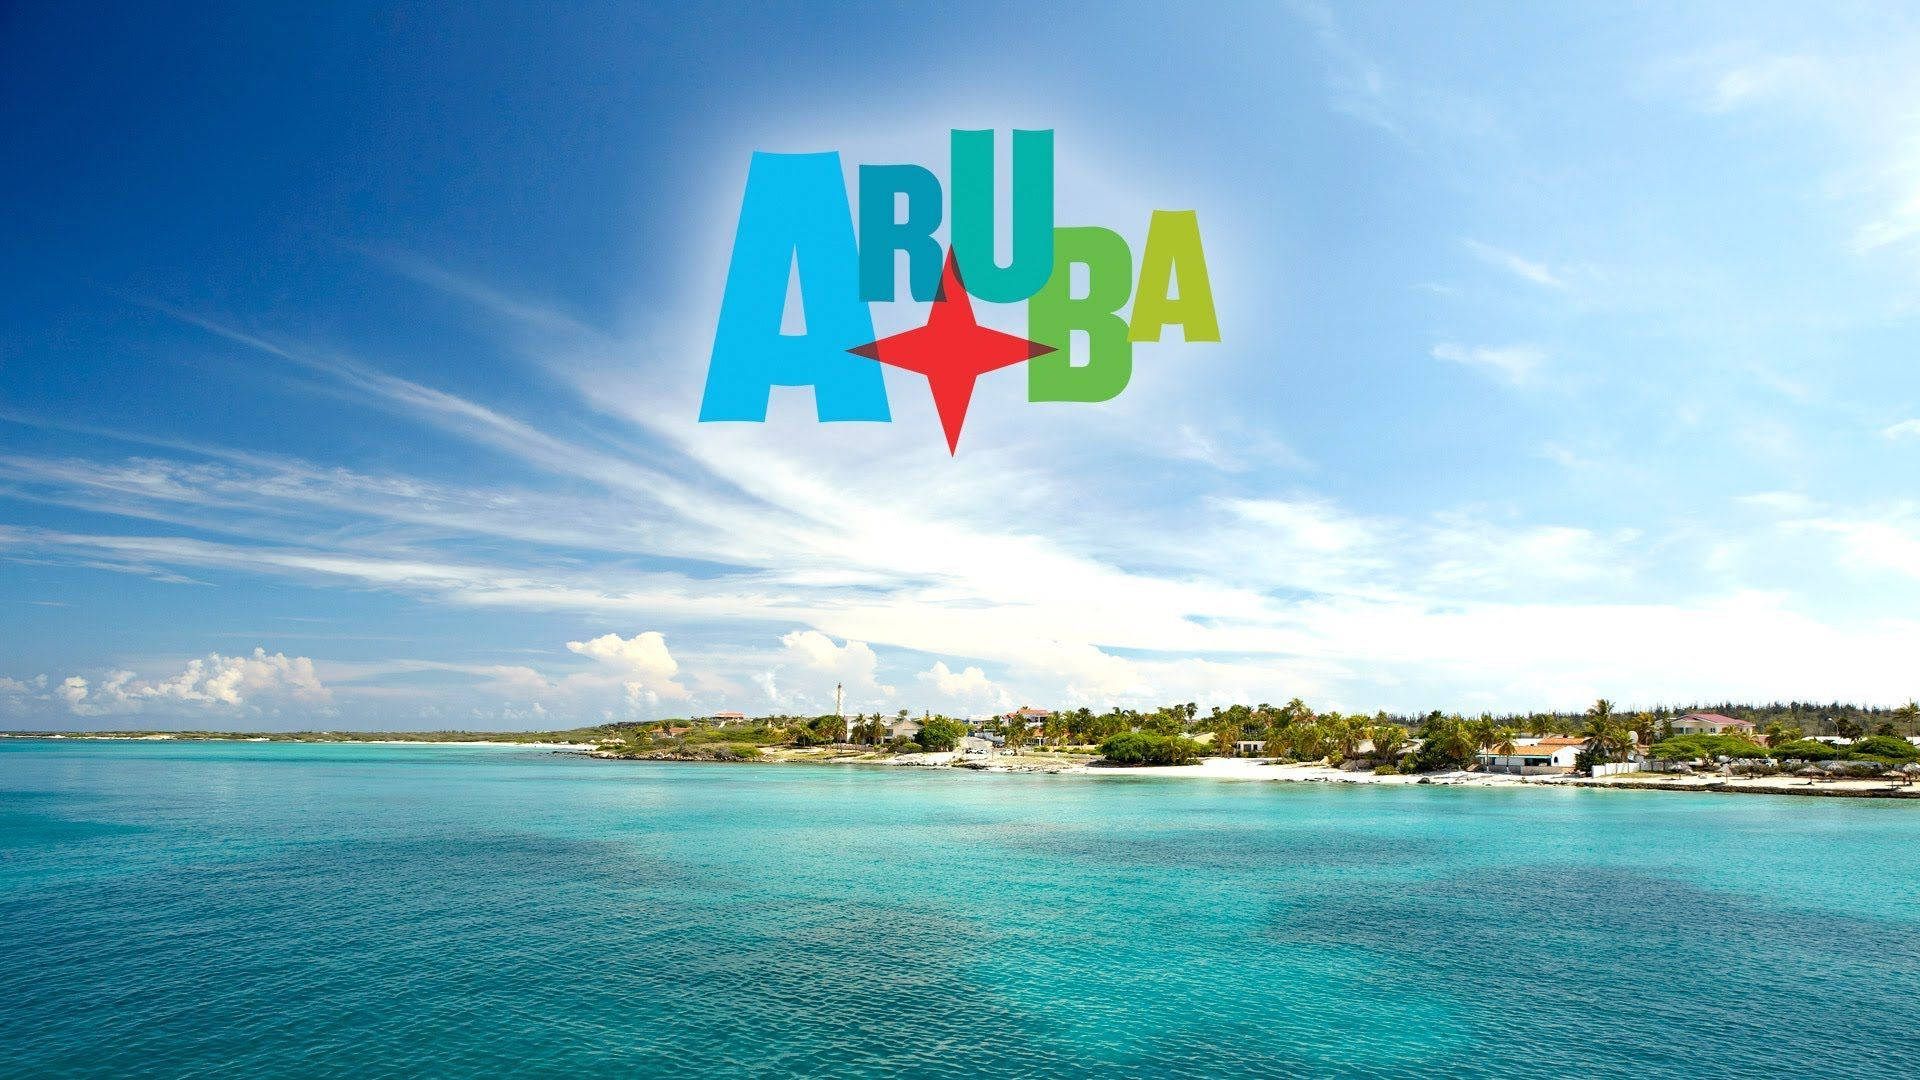 Aruba Beach Plakat Wallpaper